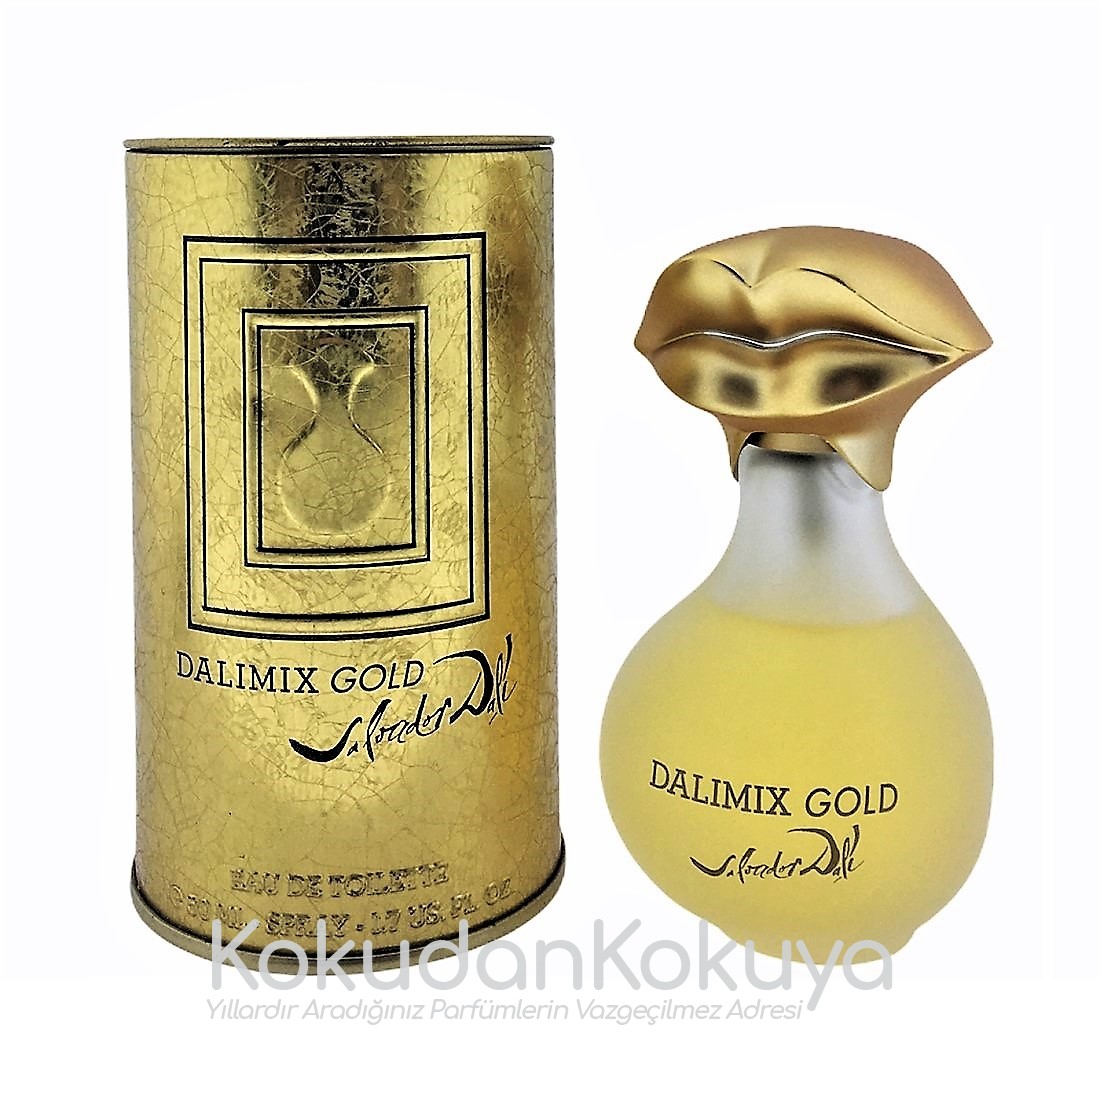 SALVADOR DALI Dalimix Gold (Vintage) Parfüm Unisex 50ml Eau De Toilette (EDT) Sprey 